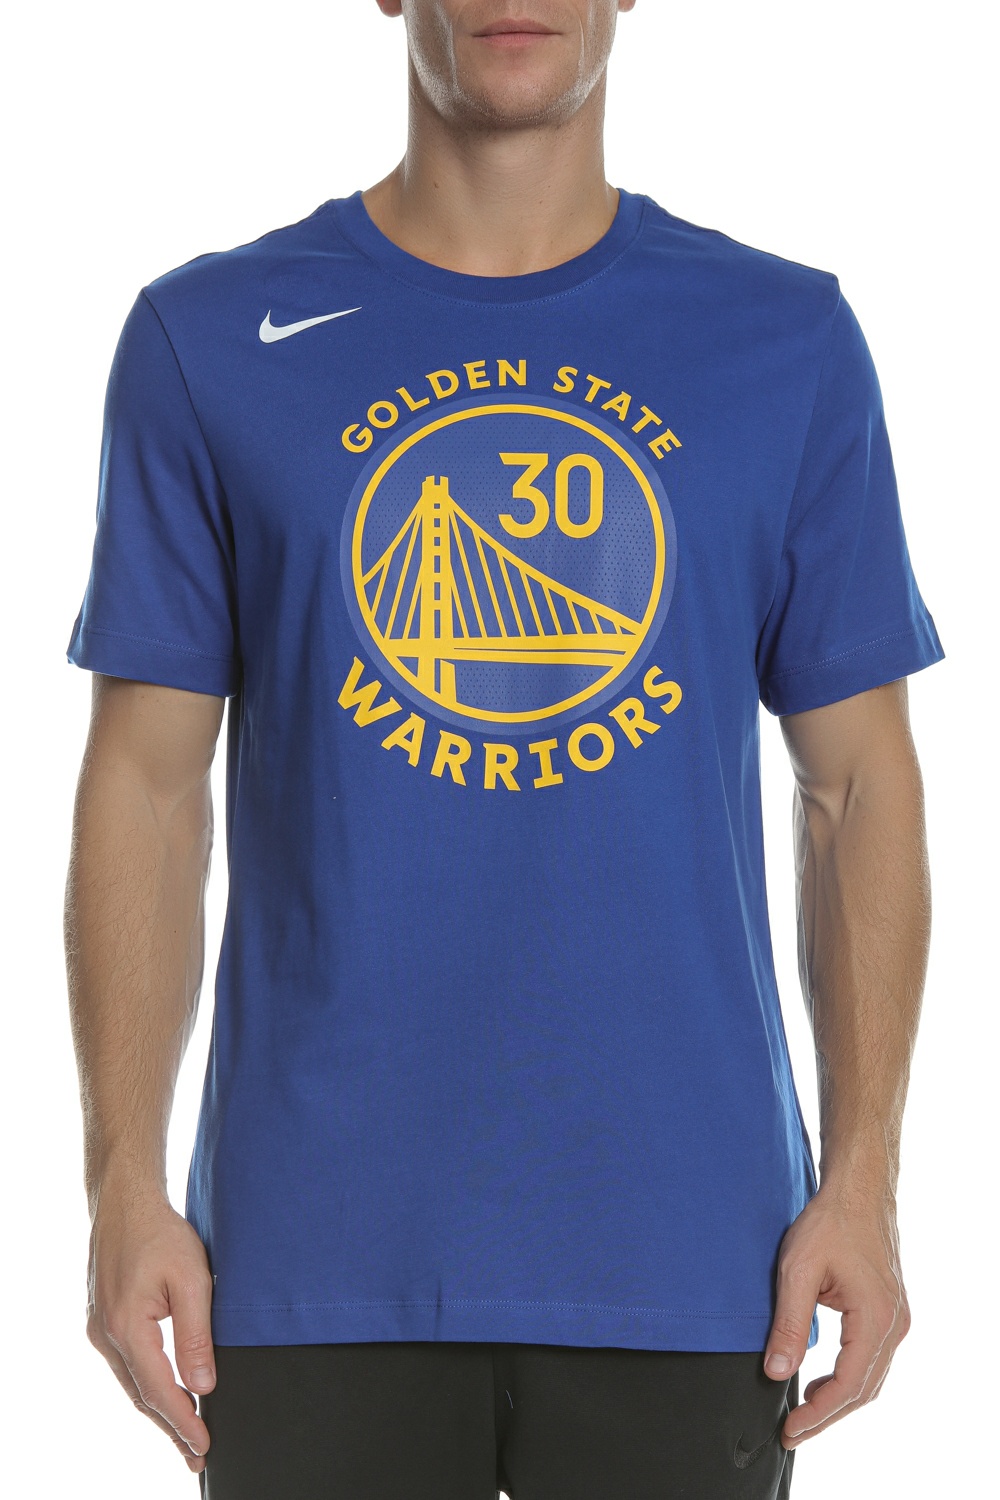 Ανδρικά/Ρούχα/Αθλητικά/T-shirt NIKE - Ανδρικό κοντομάνικο μπλουζάκι Nike NBA Golden State Warriors Dri-FIT μπλε